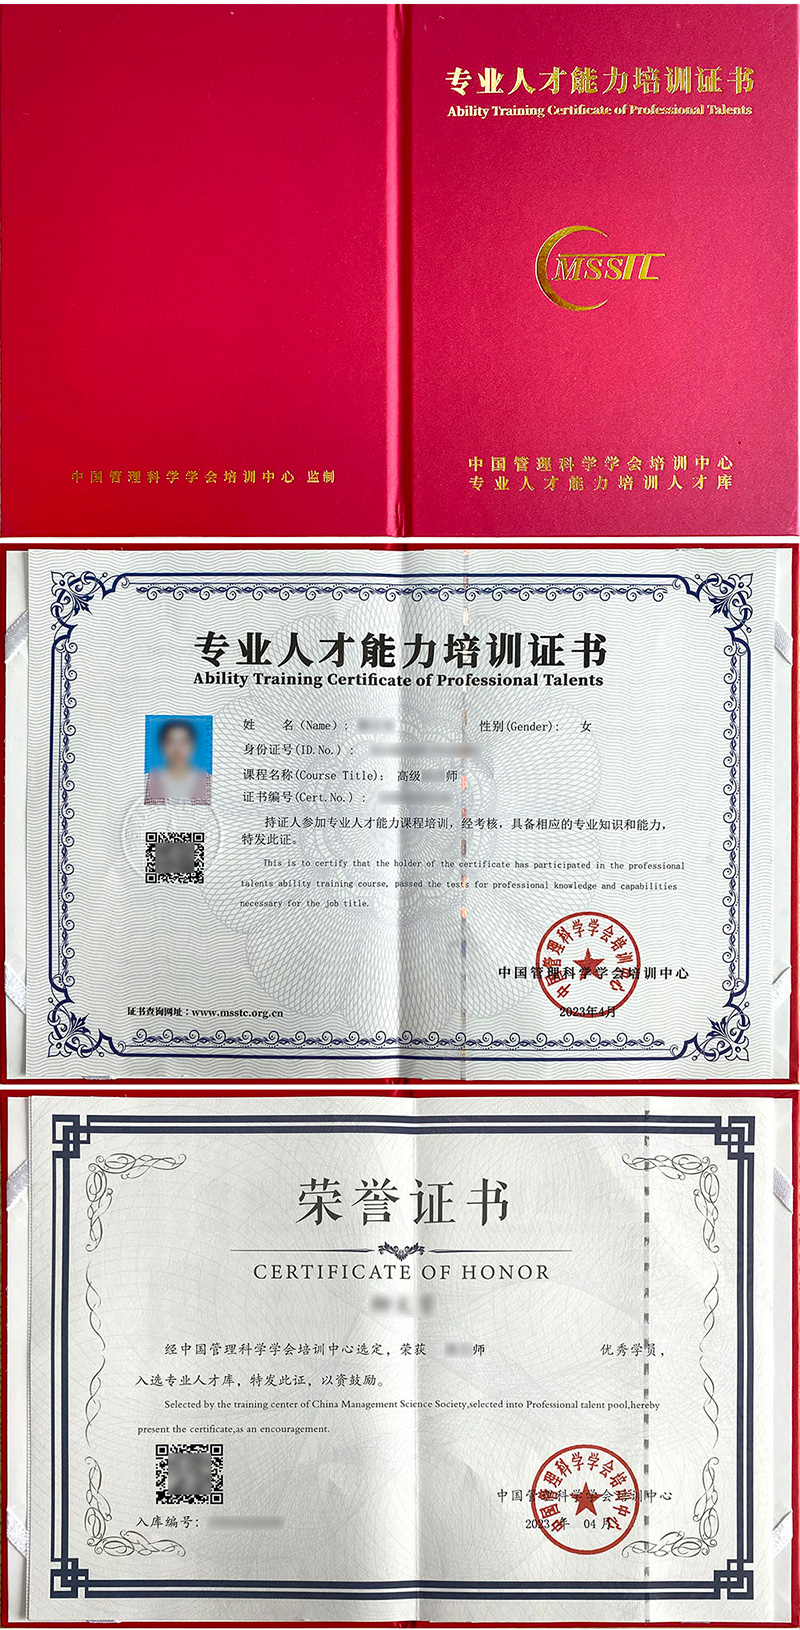 中国管理科学学会培训中心 专业人才能力培训证书 奥尔夫音乐指导师证证书样本